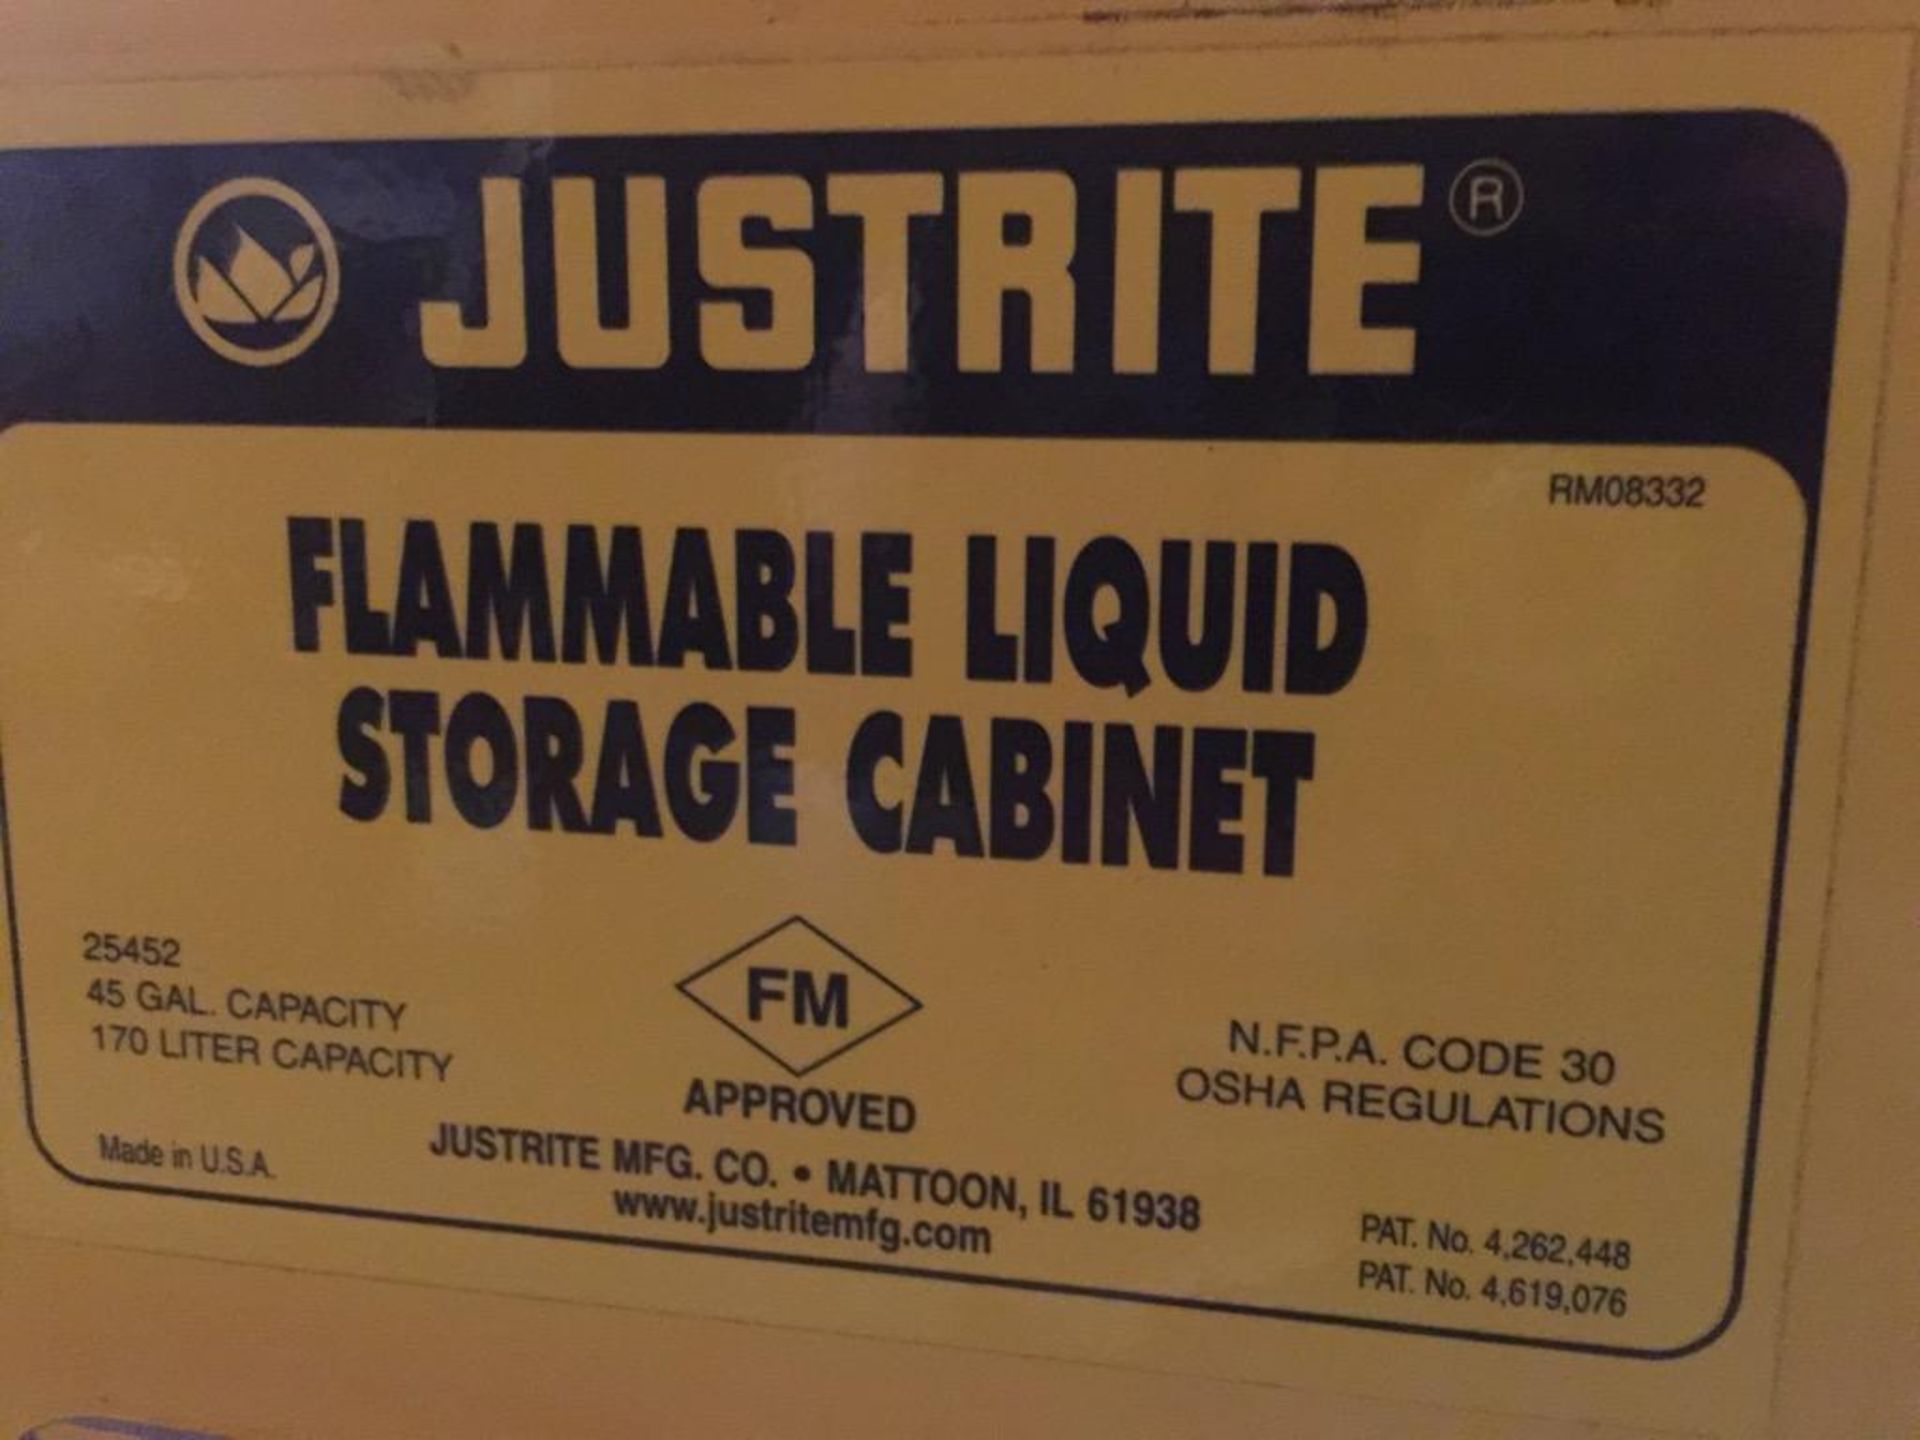 Justrite 2-door flammable liquid storage cabinet, model 25452, 45 gallon capacity. 43 x 18 x 65 in. - Bild 2 aus 6